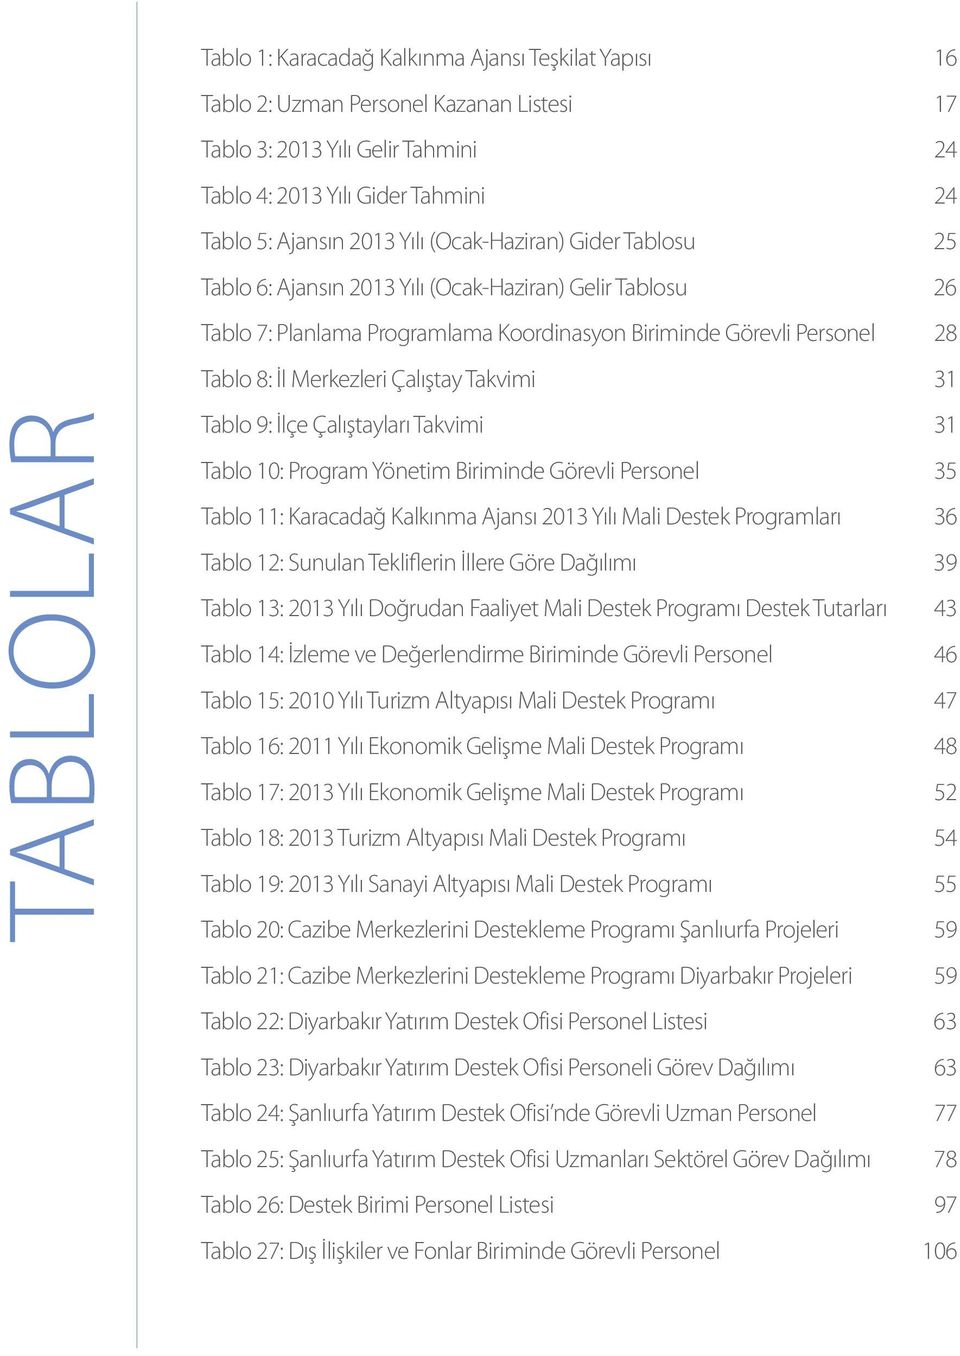 Takvimi 31 TABLOLAR Tablo 9: İlçe Çalıştayları Takvimi 31 Tablo 10: Program Yönetim Biriminde Görevli Personel 35 Tablo 11: Karacadağ Kalkınma Ajansı 2013 Yılı Mali Destek Programları 36 Tablo 12: